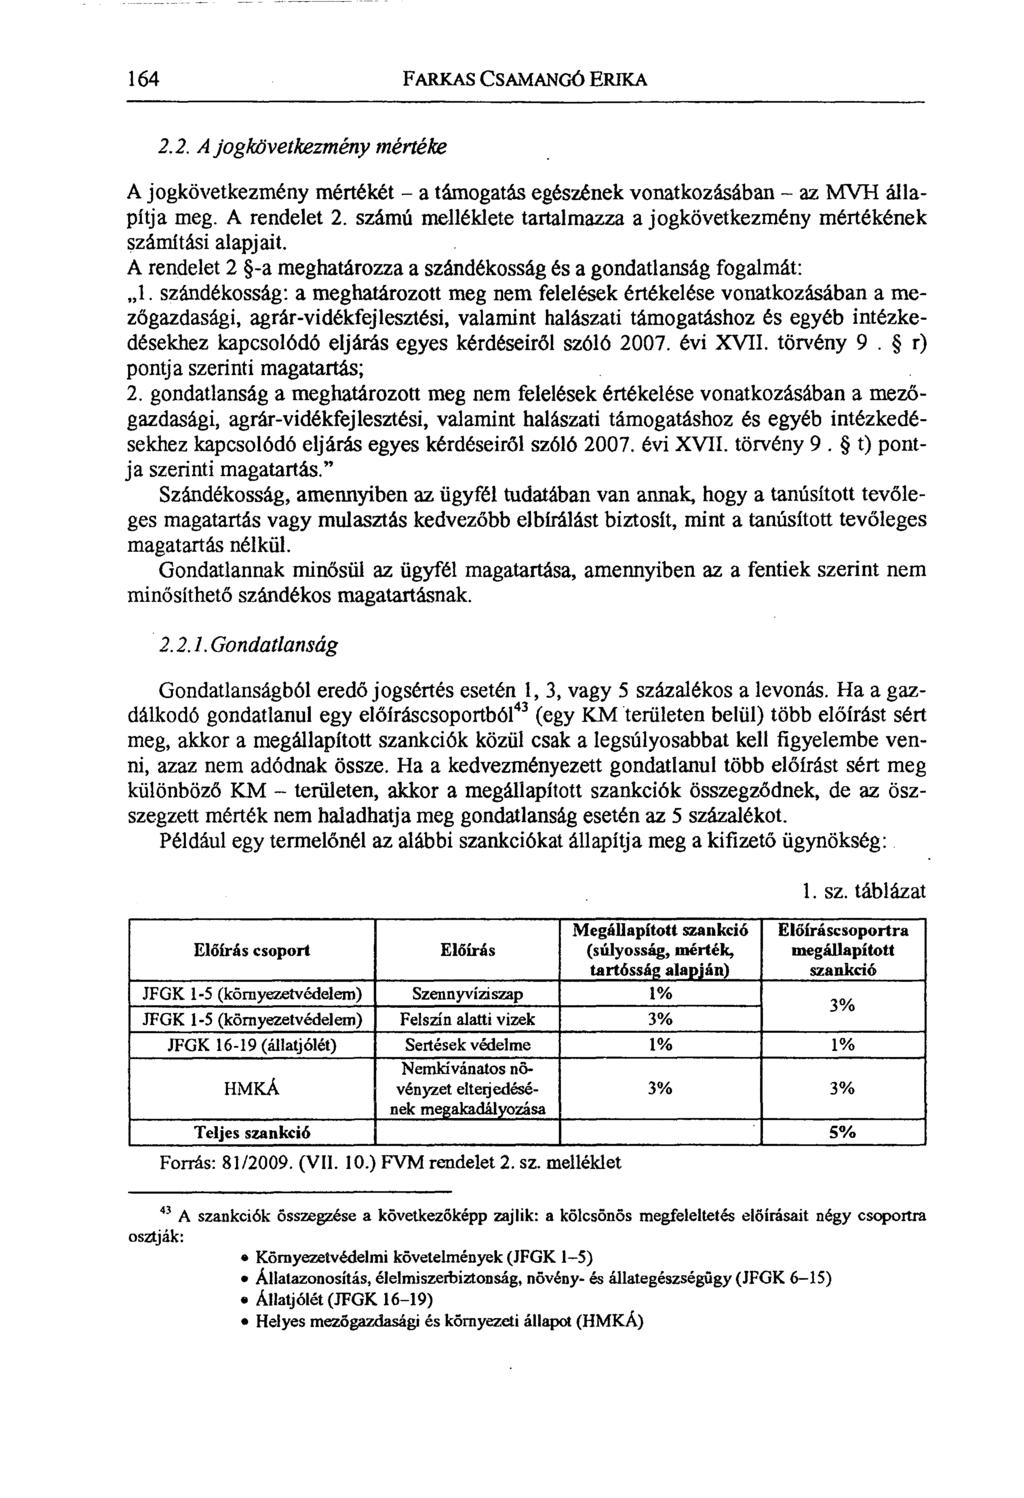 Kölcsönös megfeleltetés teljesülésének ellenőrzése és a szankciók - PDF  Ingyenes letöltés